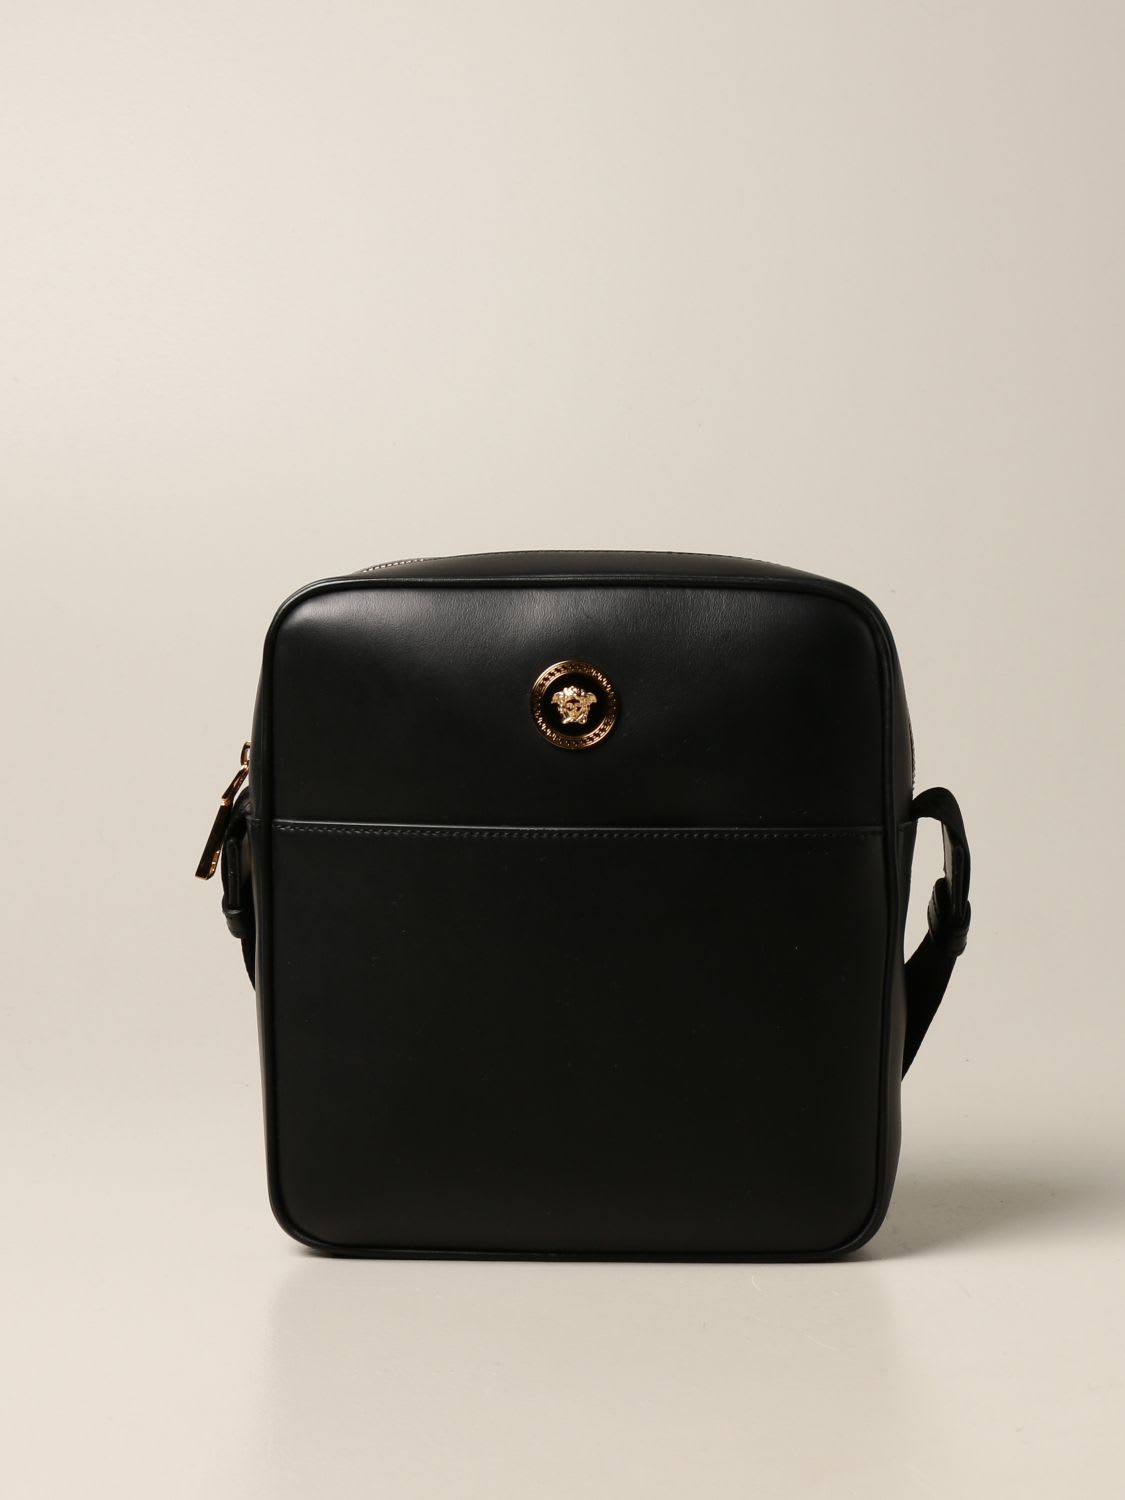 Versace Shoulder Bag Versace Leather Bag With Medusa